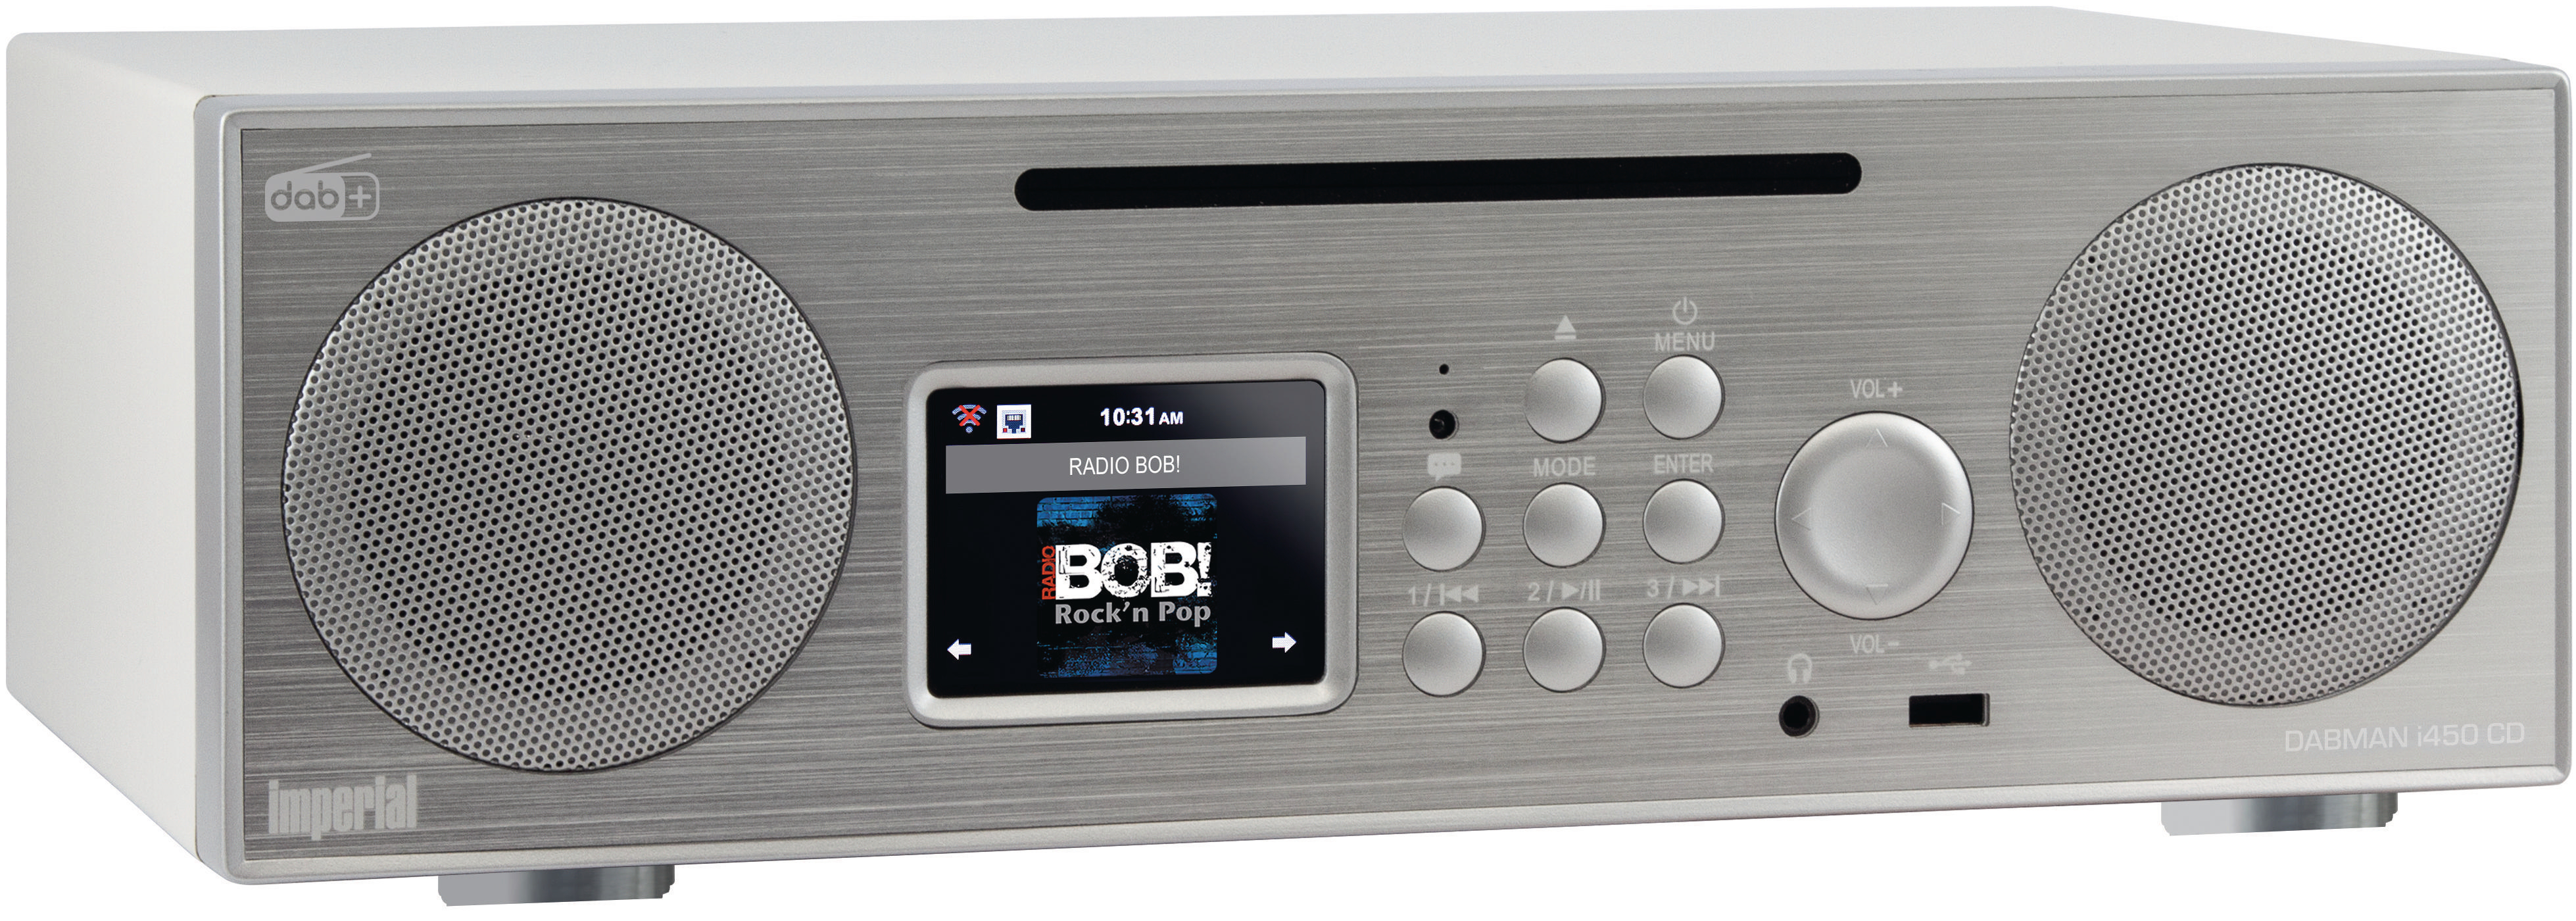 IMPERIAL DABMAN i450 CD DAB+ AM, silber/weiß Internet DAB+, FM, Radio, Radio, DAB, Bluetooth